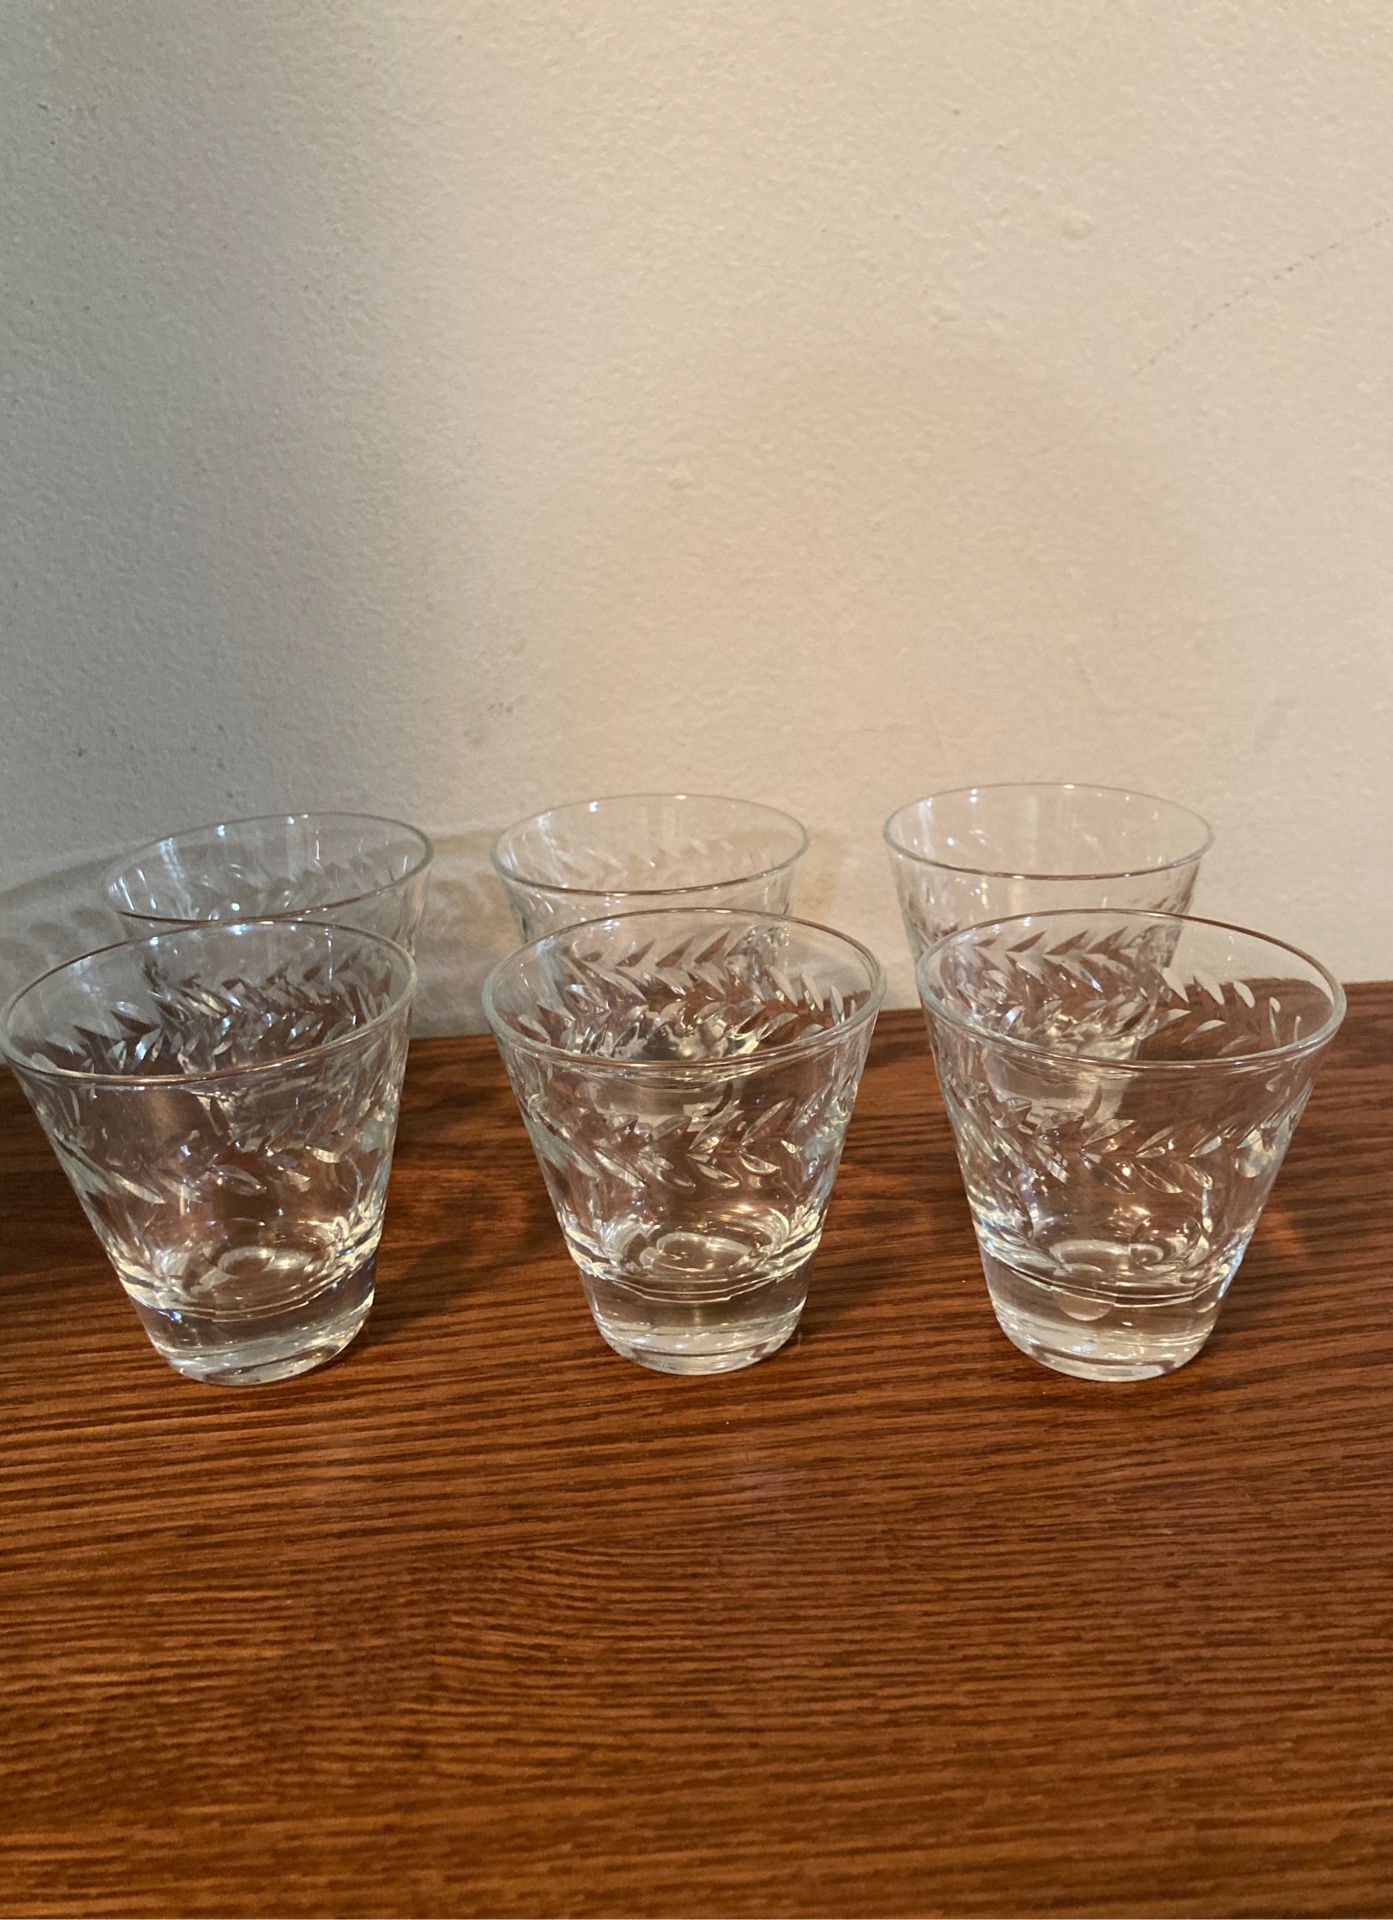 Antique full set of shot glasses